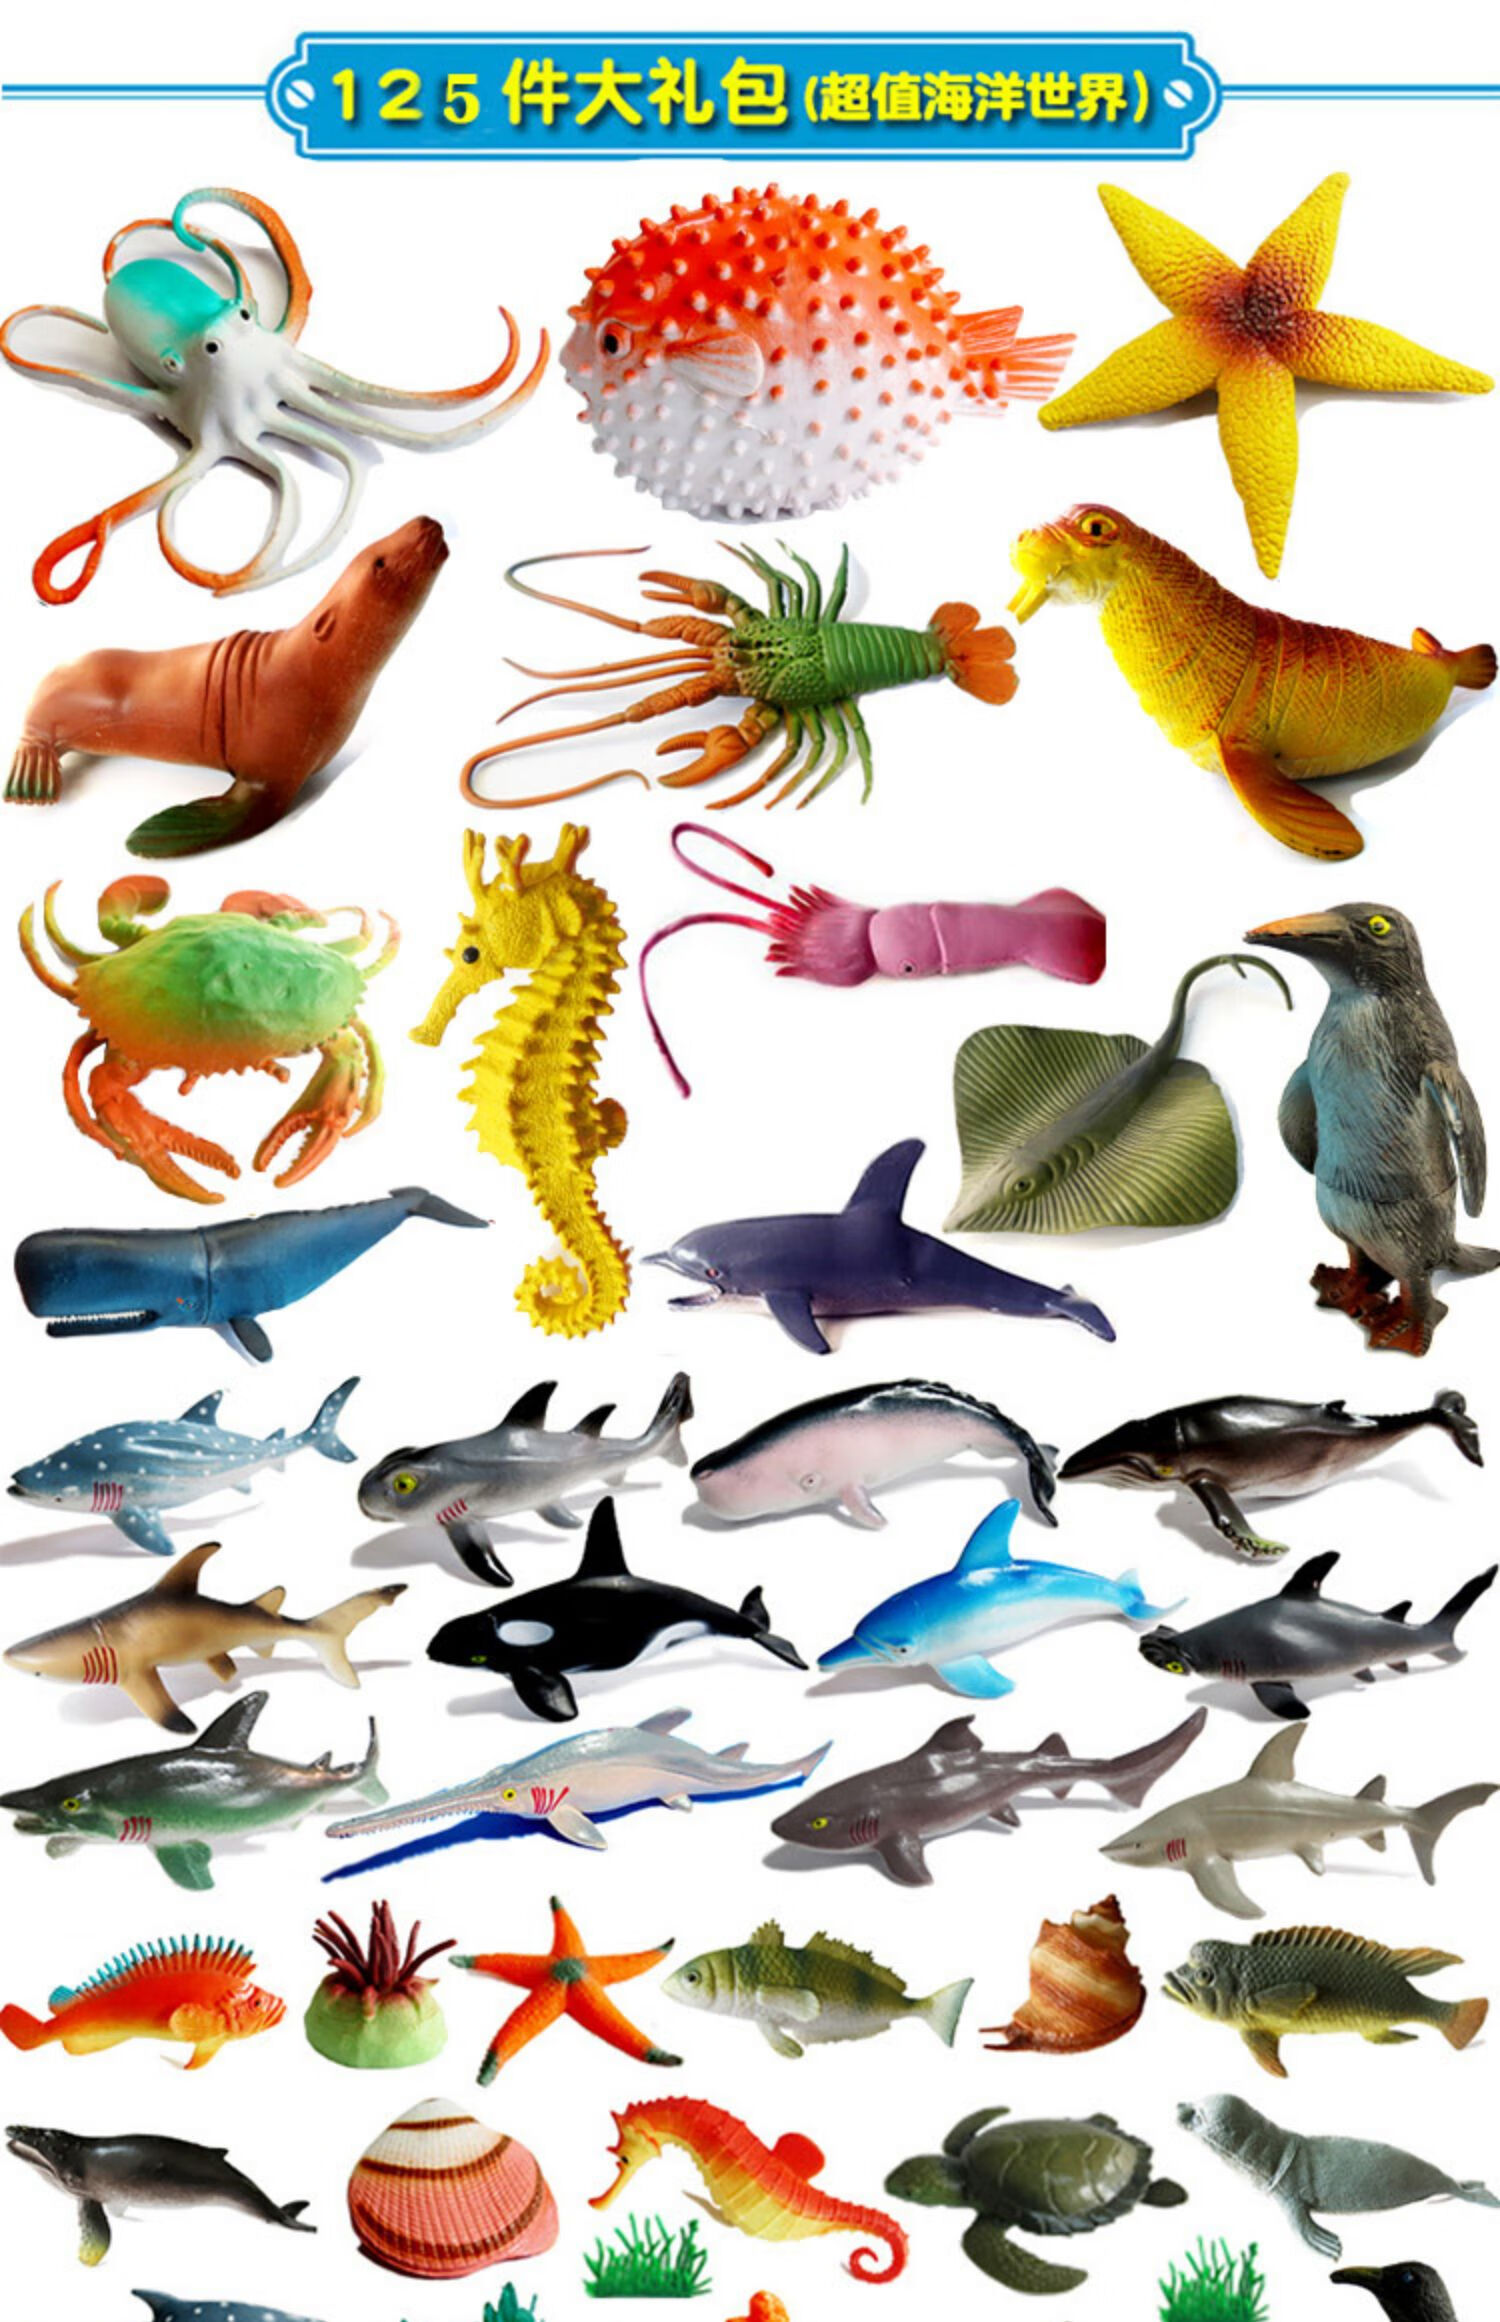 仿真软胶静态海洋动物模型儿童认知玩具河豚海豚鲨鱼热带鱼小海洋超值